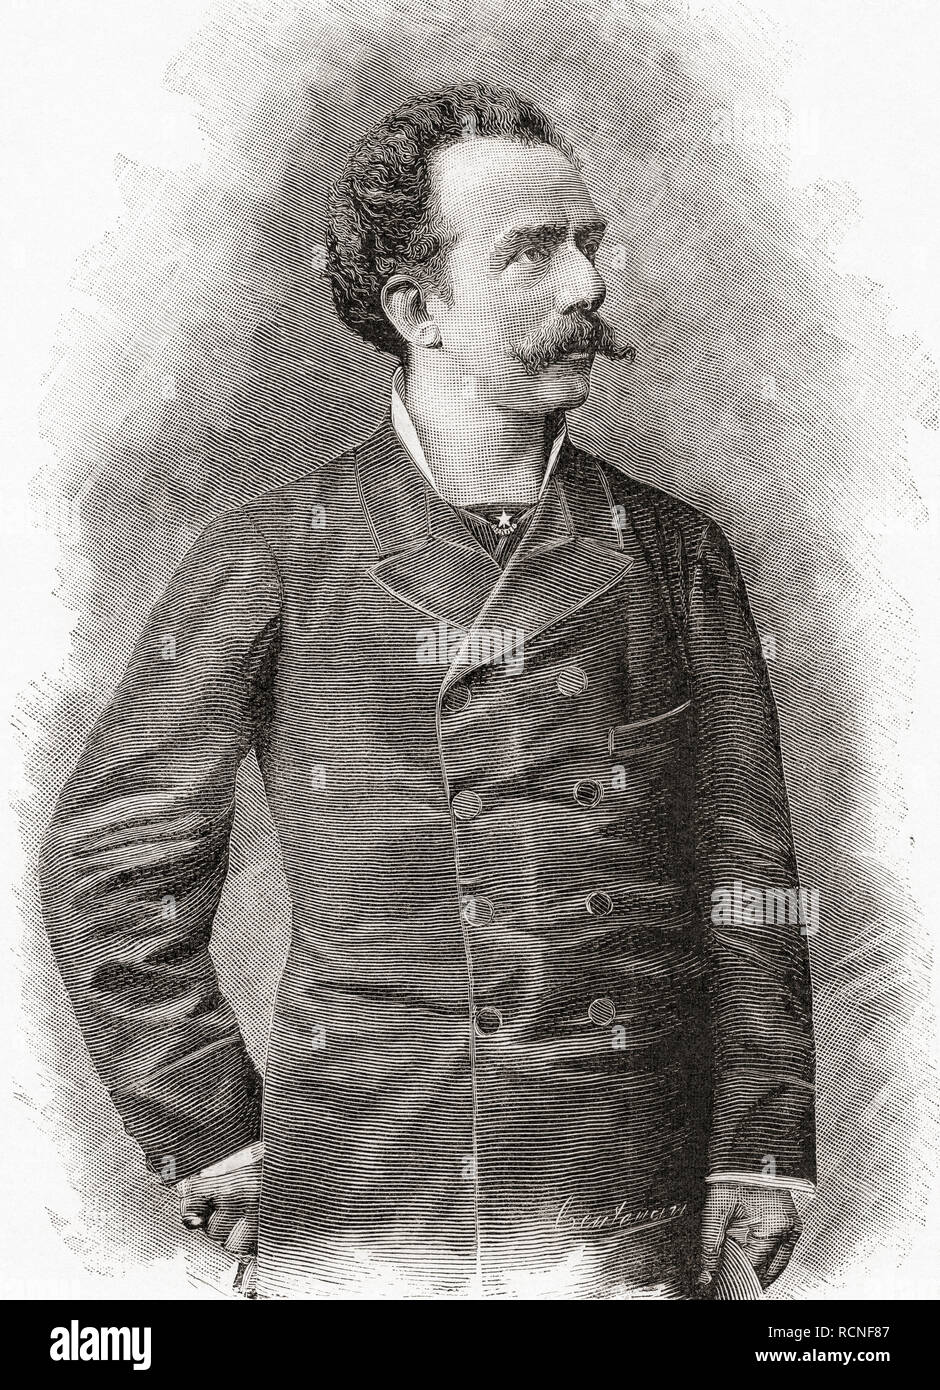 Francesco (Franco) Antonio Faccio, 1840 - 1891.  Italian composer and conductor.  From La Ilustracion Artistica, published 1887. Stock Photo